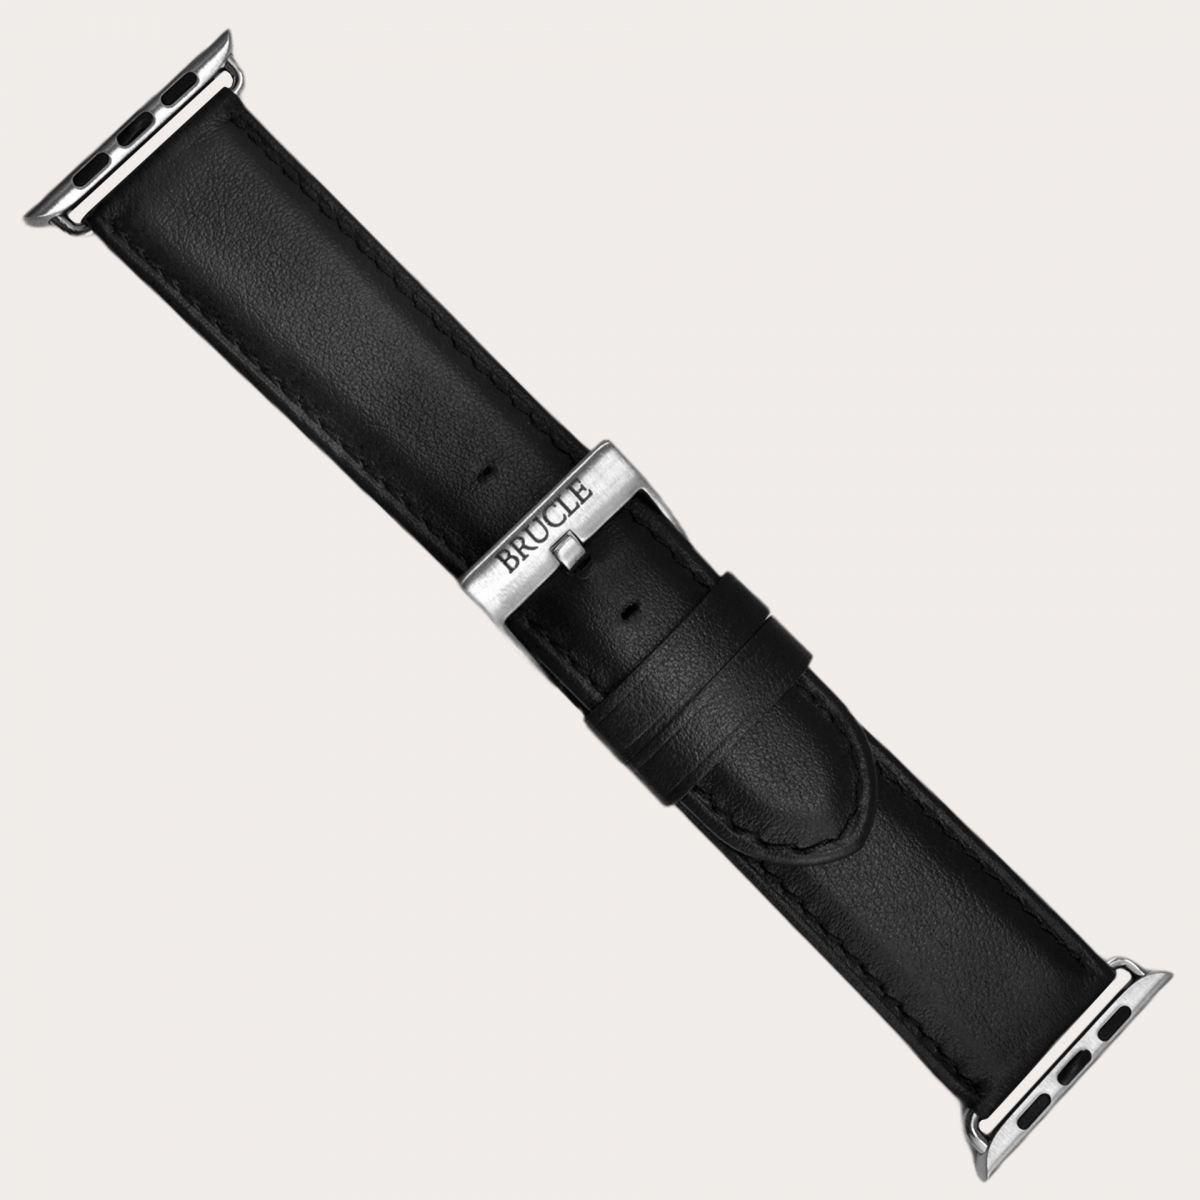 Bracelet en cuir compatible avec Apple Watch / Samsung smartwatch, noir